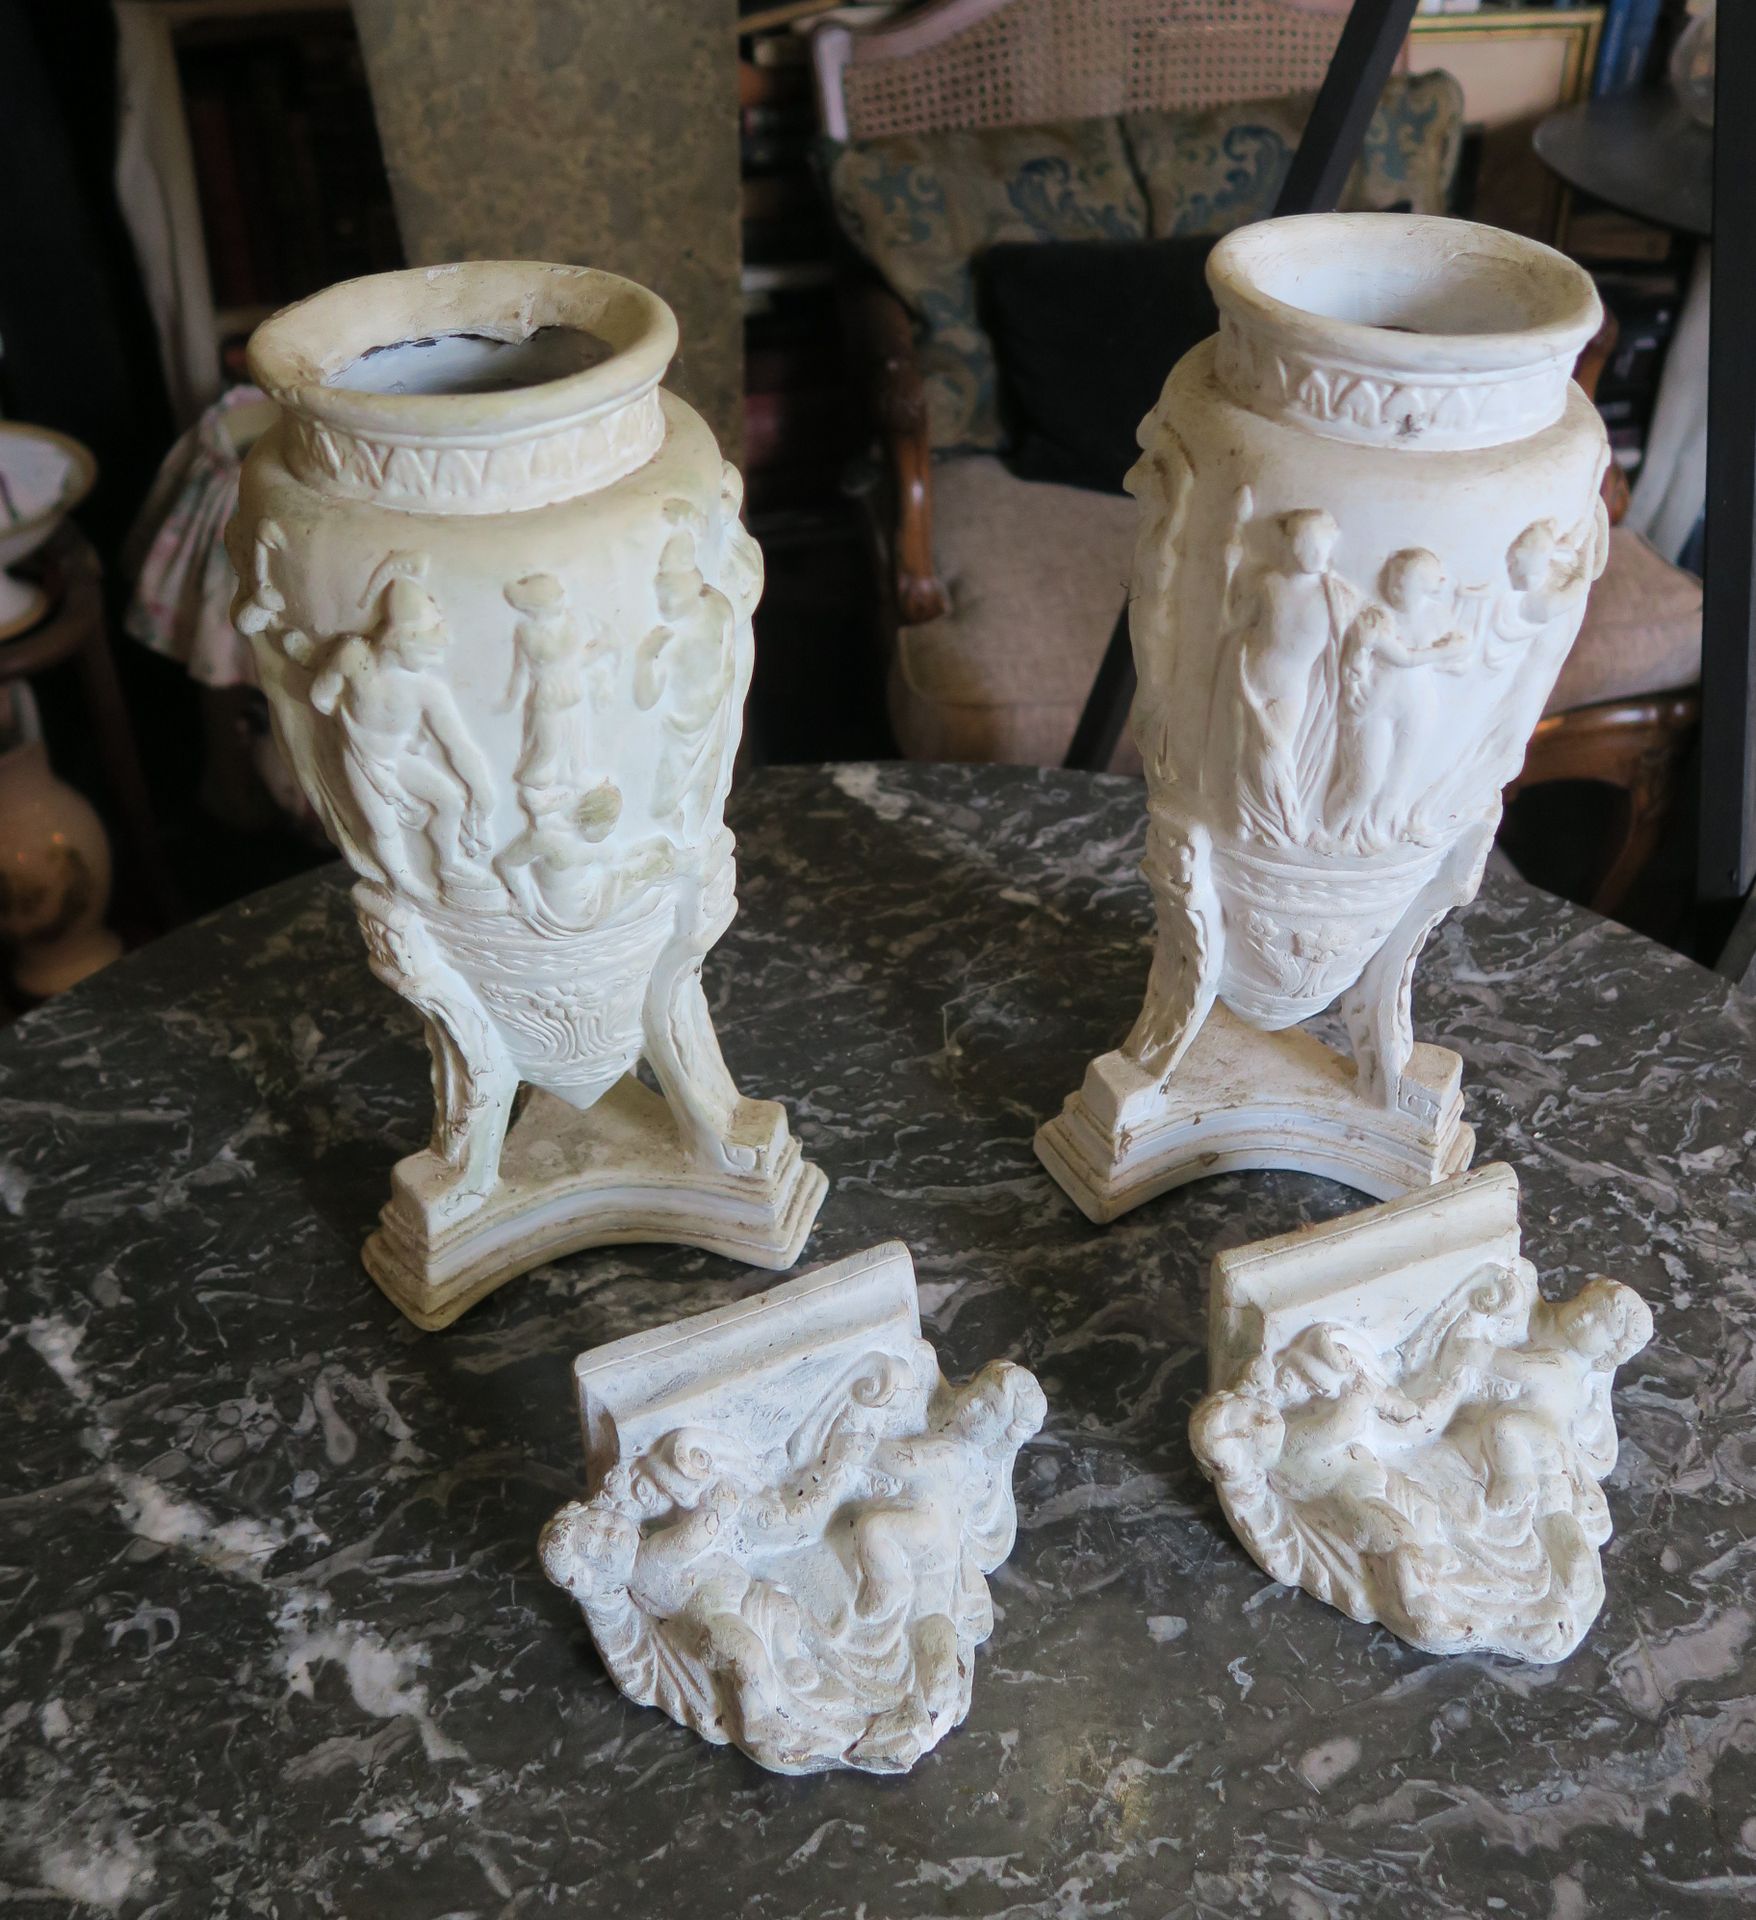 Null 一对石膏古董花瓶和两个装饰有小天使的微型壁炉托架
H.花瓶为30厘米 
(有些破损)